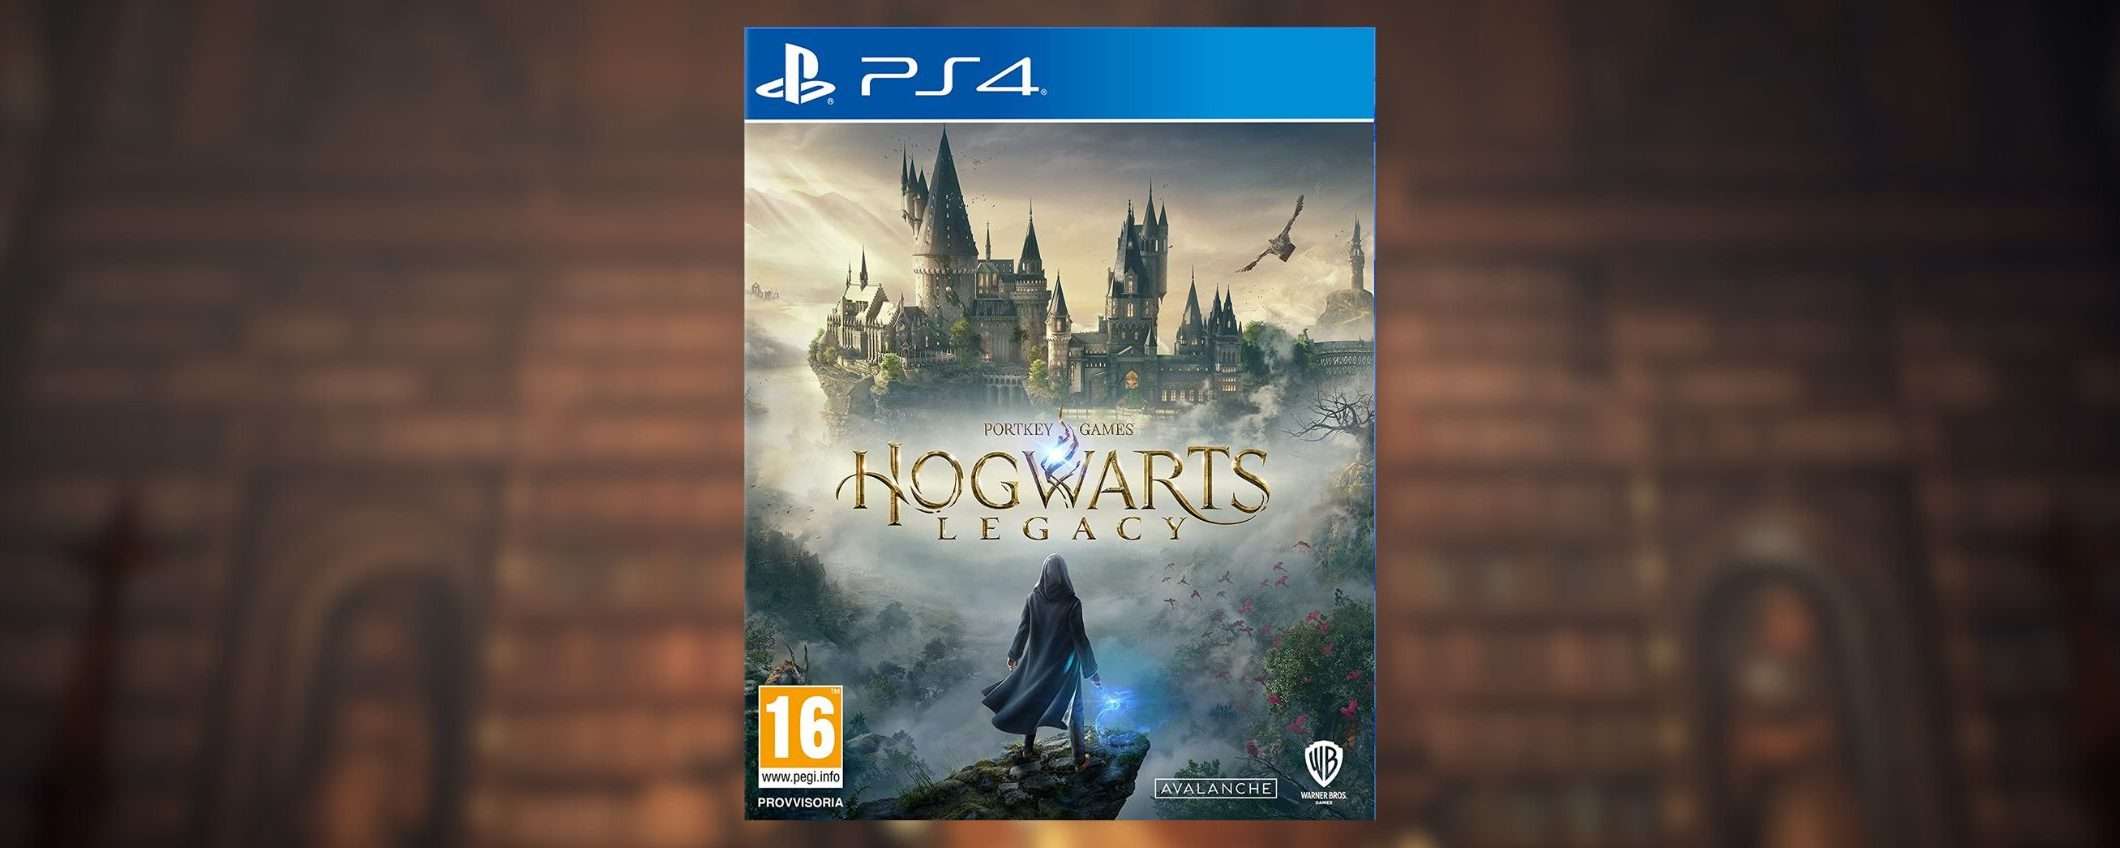 Hogwarts Legacy: il prezzo CROLLA al minimo su Amazon, solo 21,99€